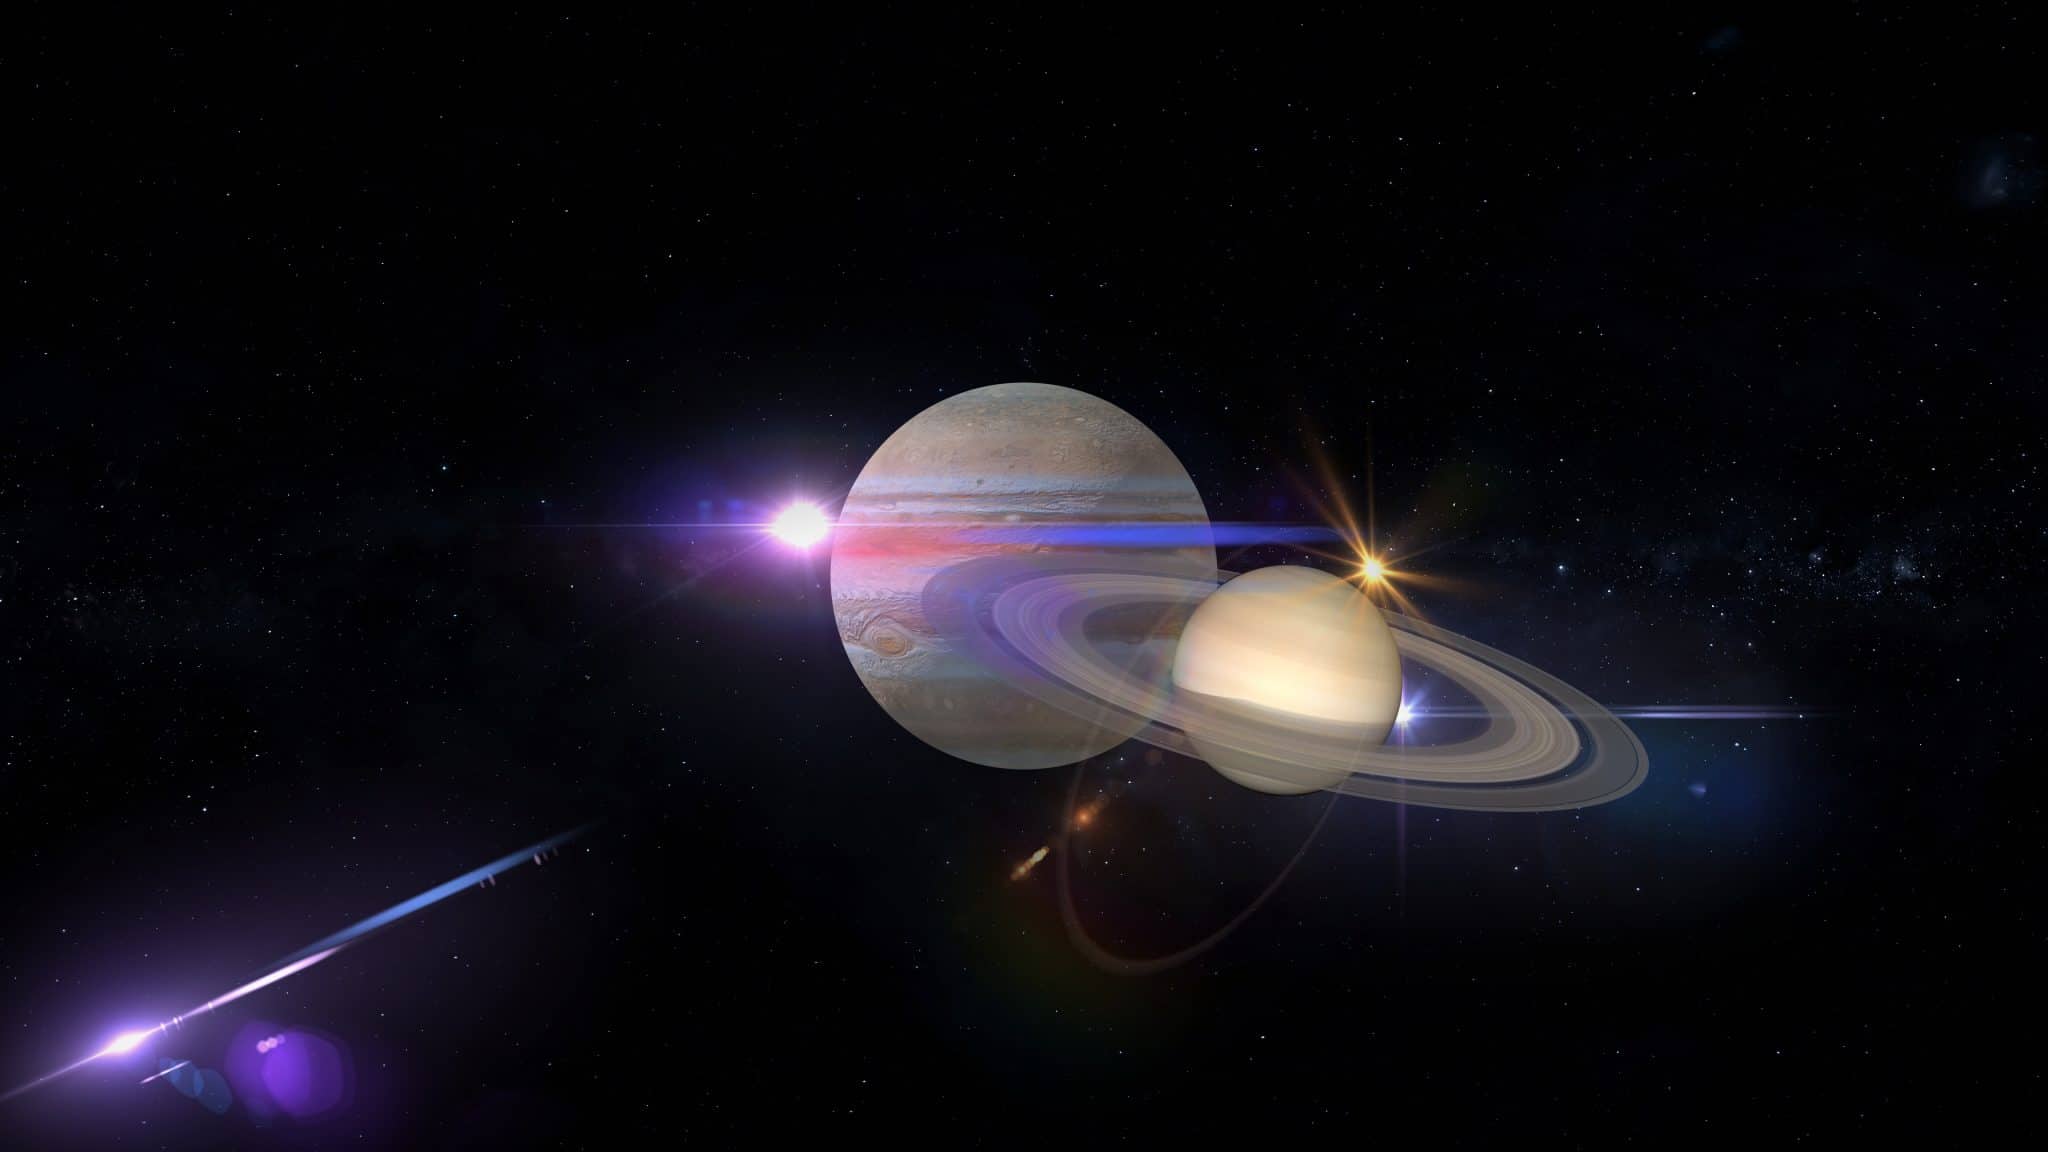 Seltenes Himmelsspektakel Jupiter Und Saturn Verschmelzen Zu Stern